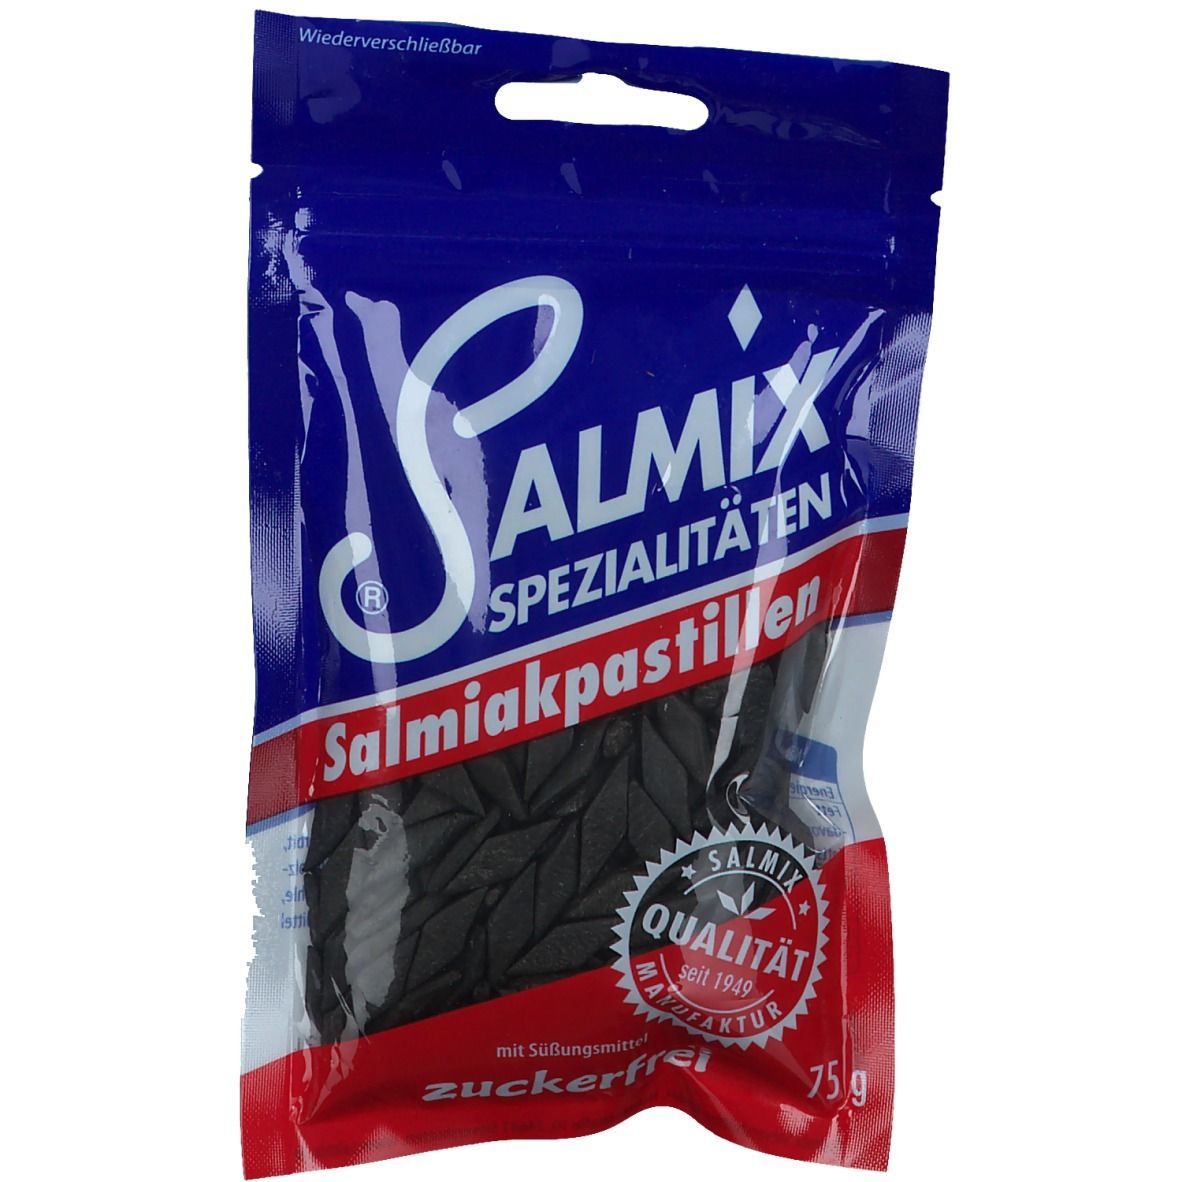 Salmix® Salmiakpastillen zuckerfrei